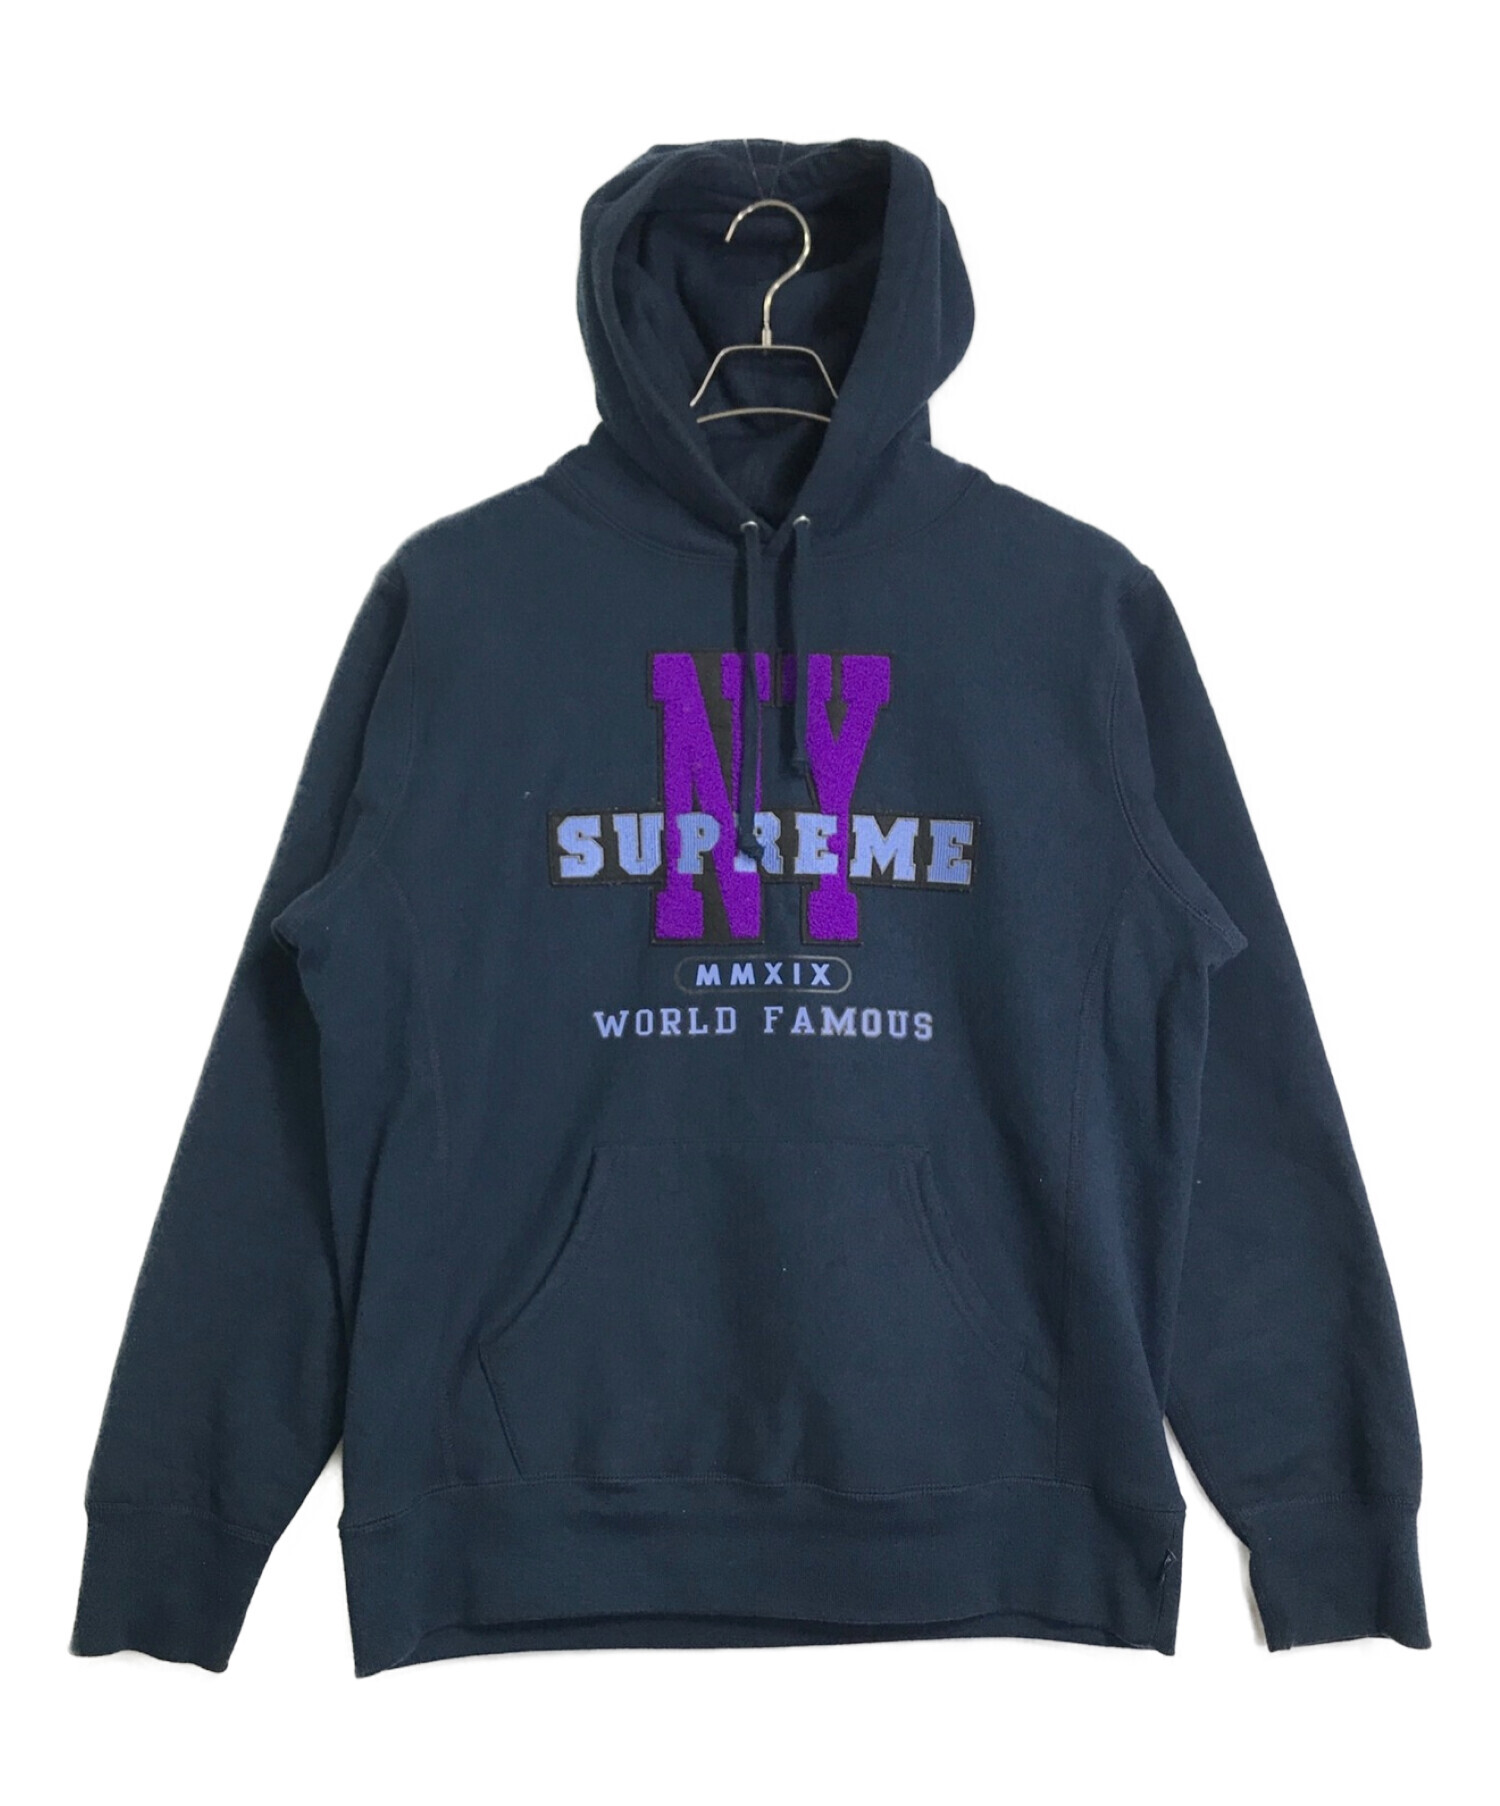 Supreme (シュプリーム) 19AW NYワッペンスウェットパーカー/NY Hooded Sweatshirt ネイビー サイズ:M